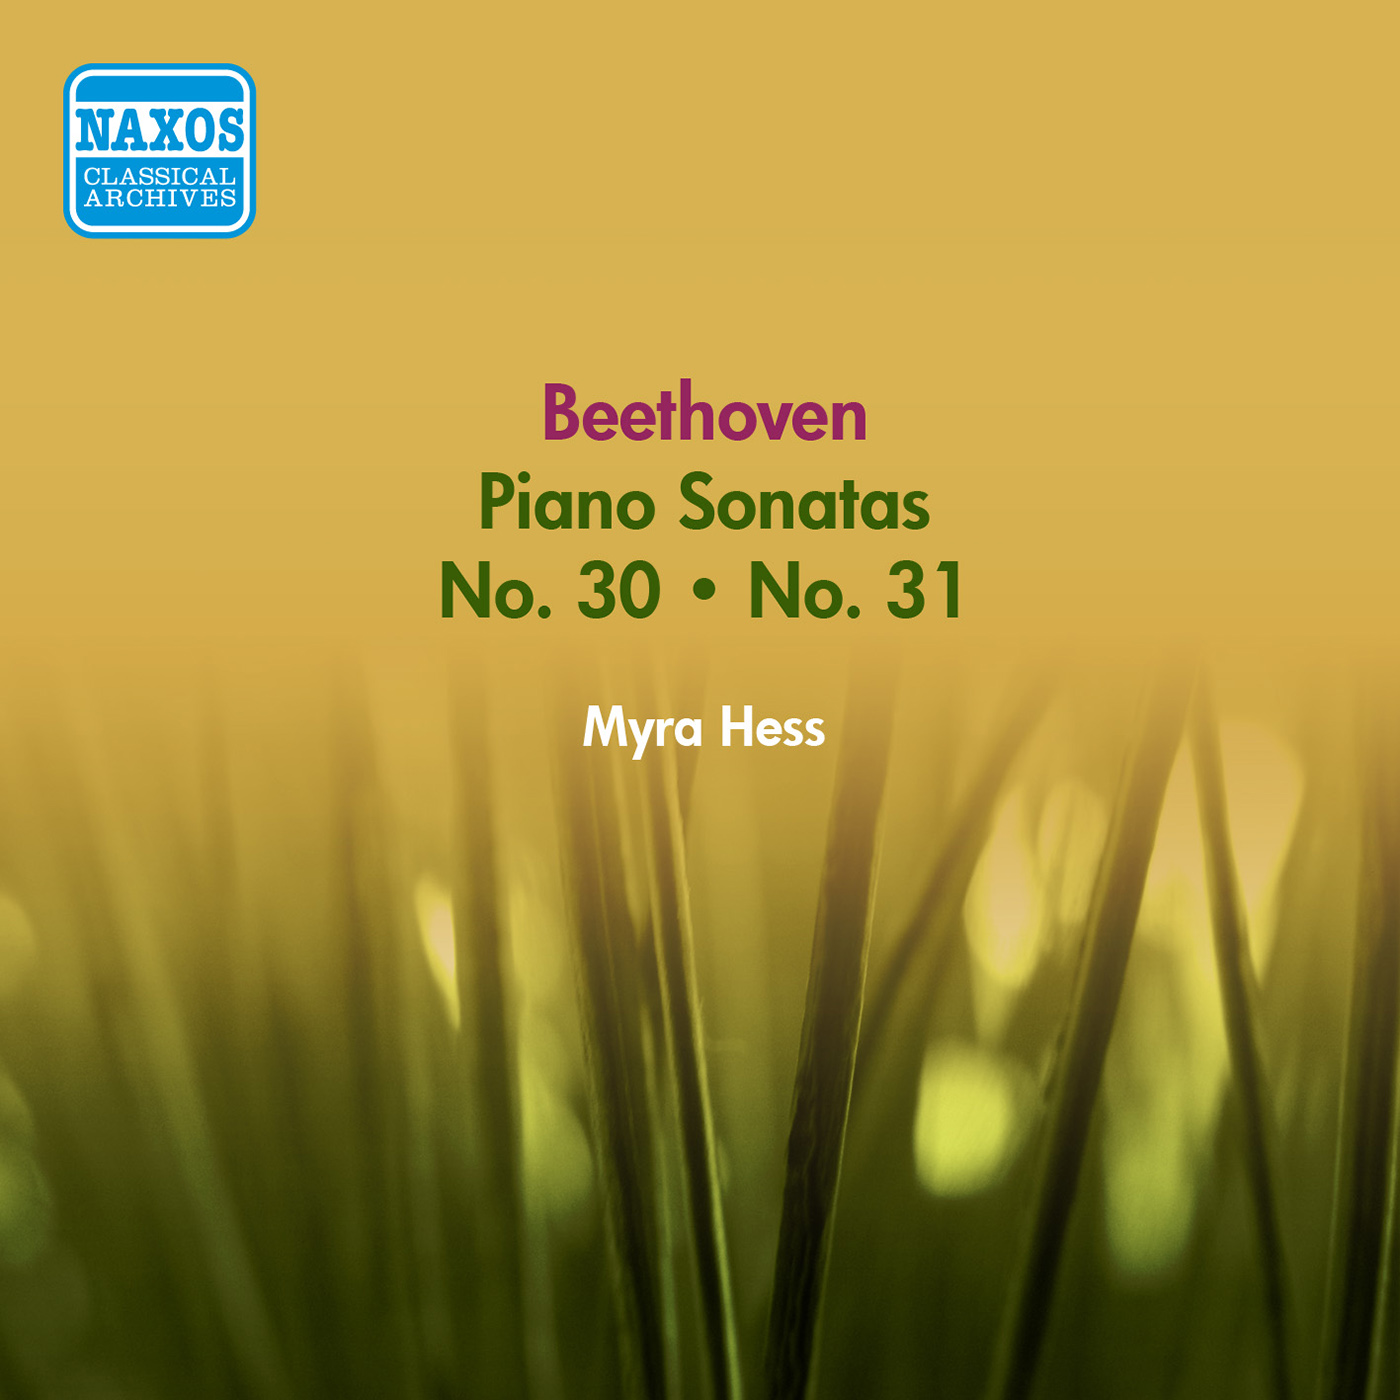 Piano Sonata No. 31 in A-Flat Major, Op. 110: III. Adagio, ma non troppo - IV. Fuga: Allegro, ma non troppo